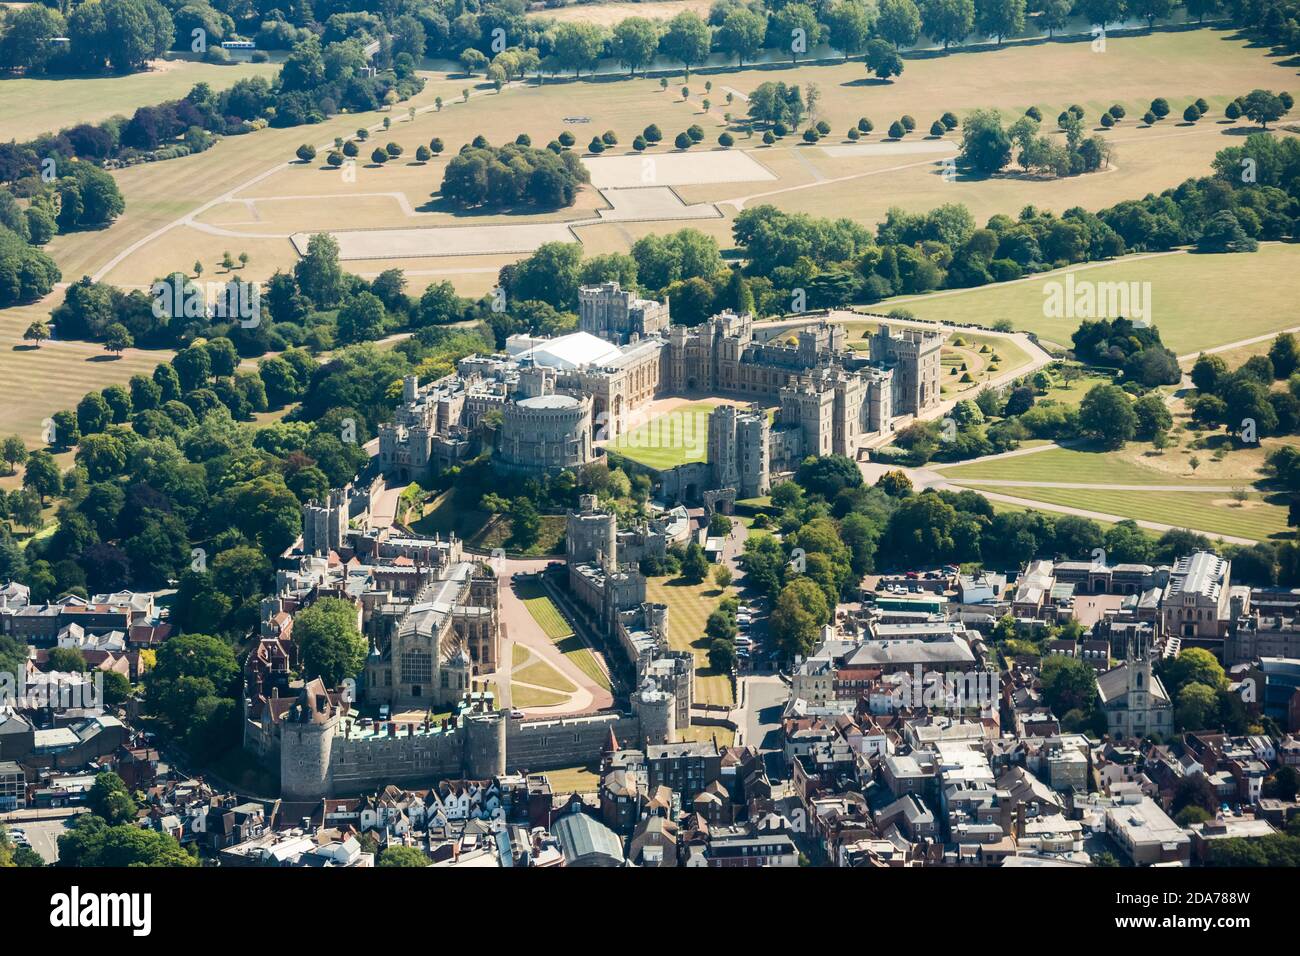 Vue aérienne du château de Windsor Banque D'Images